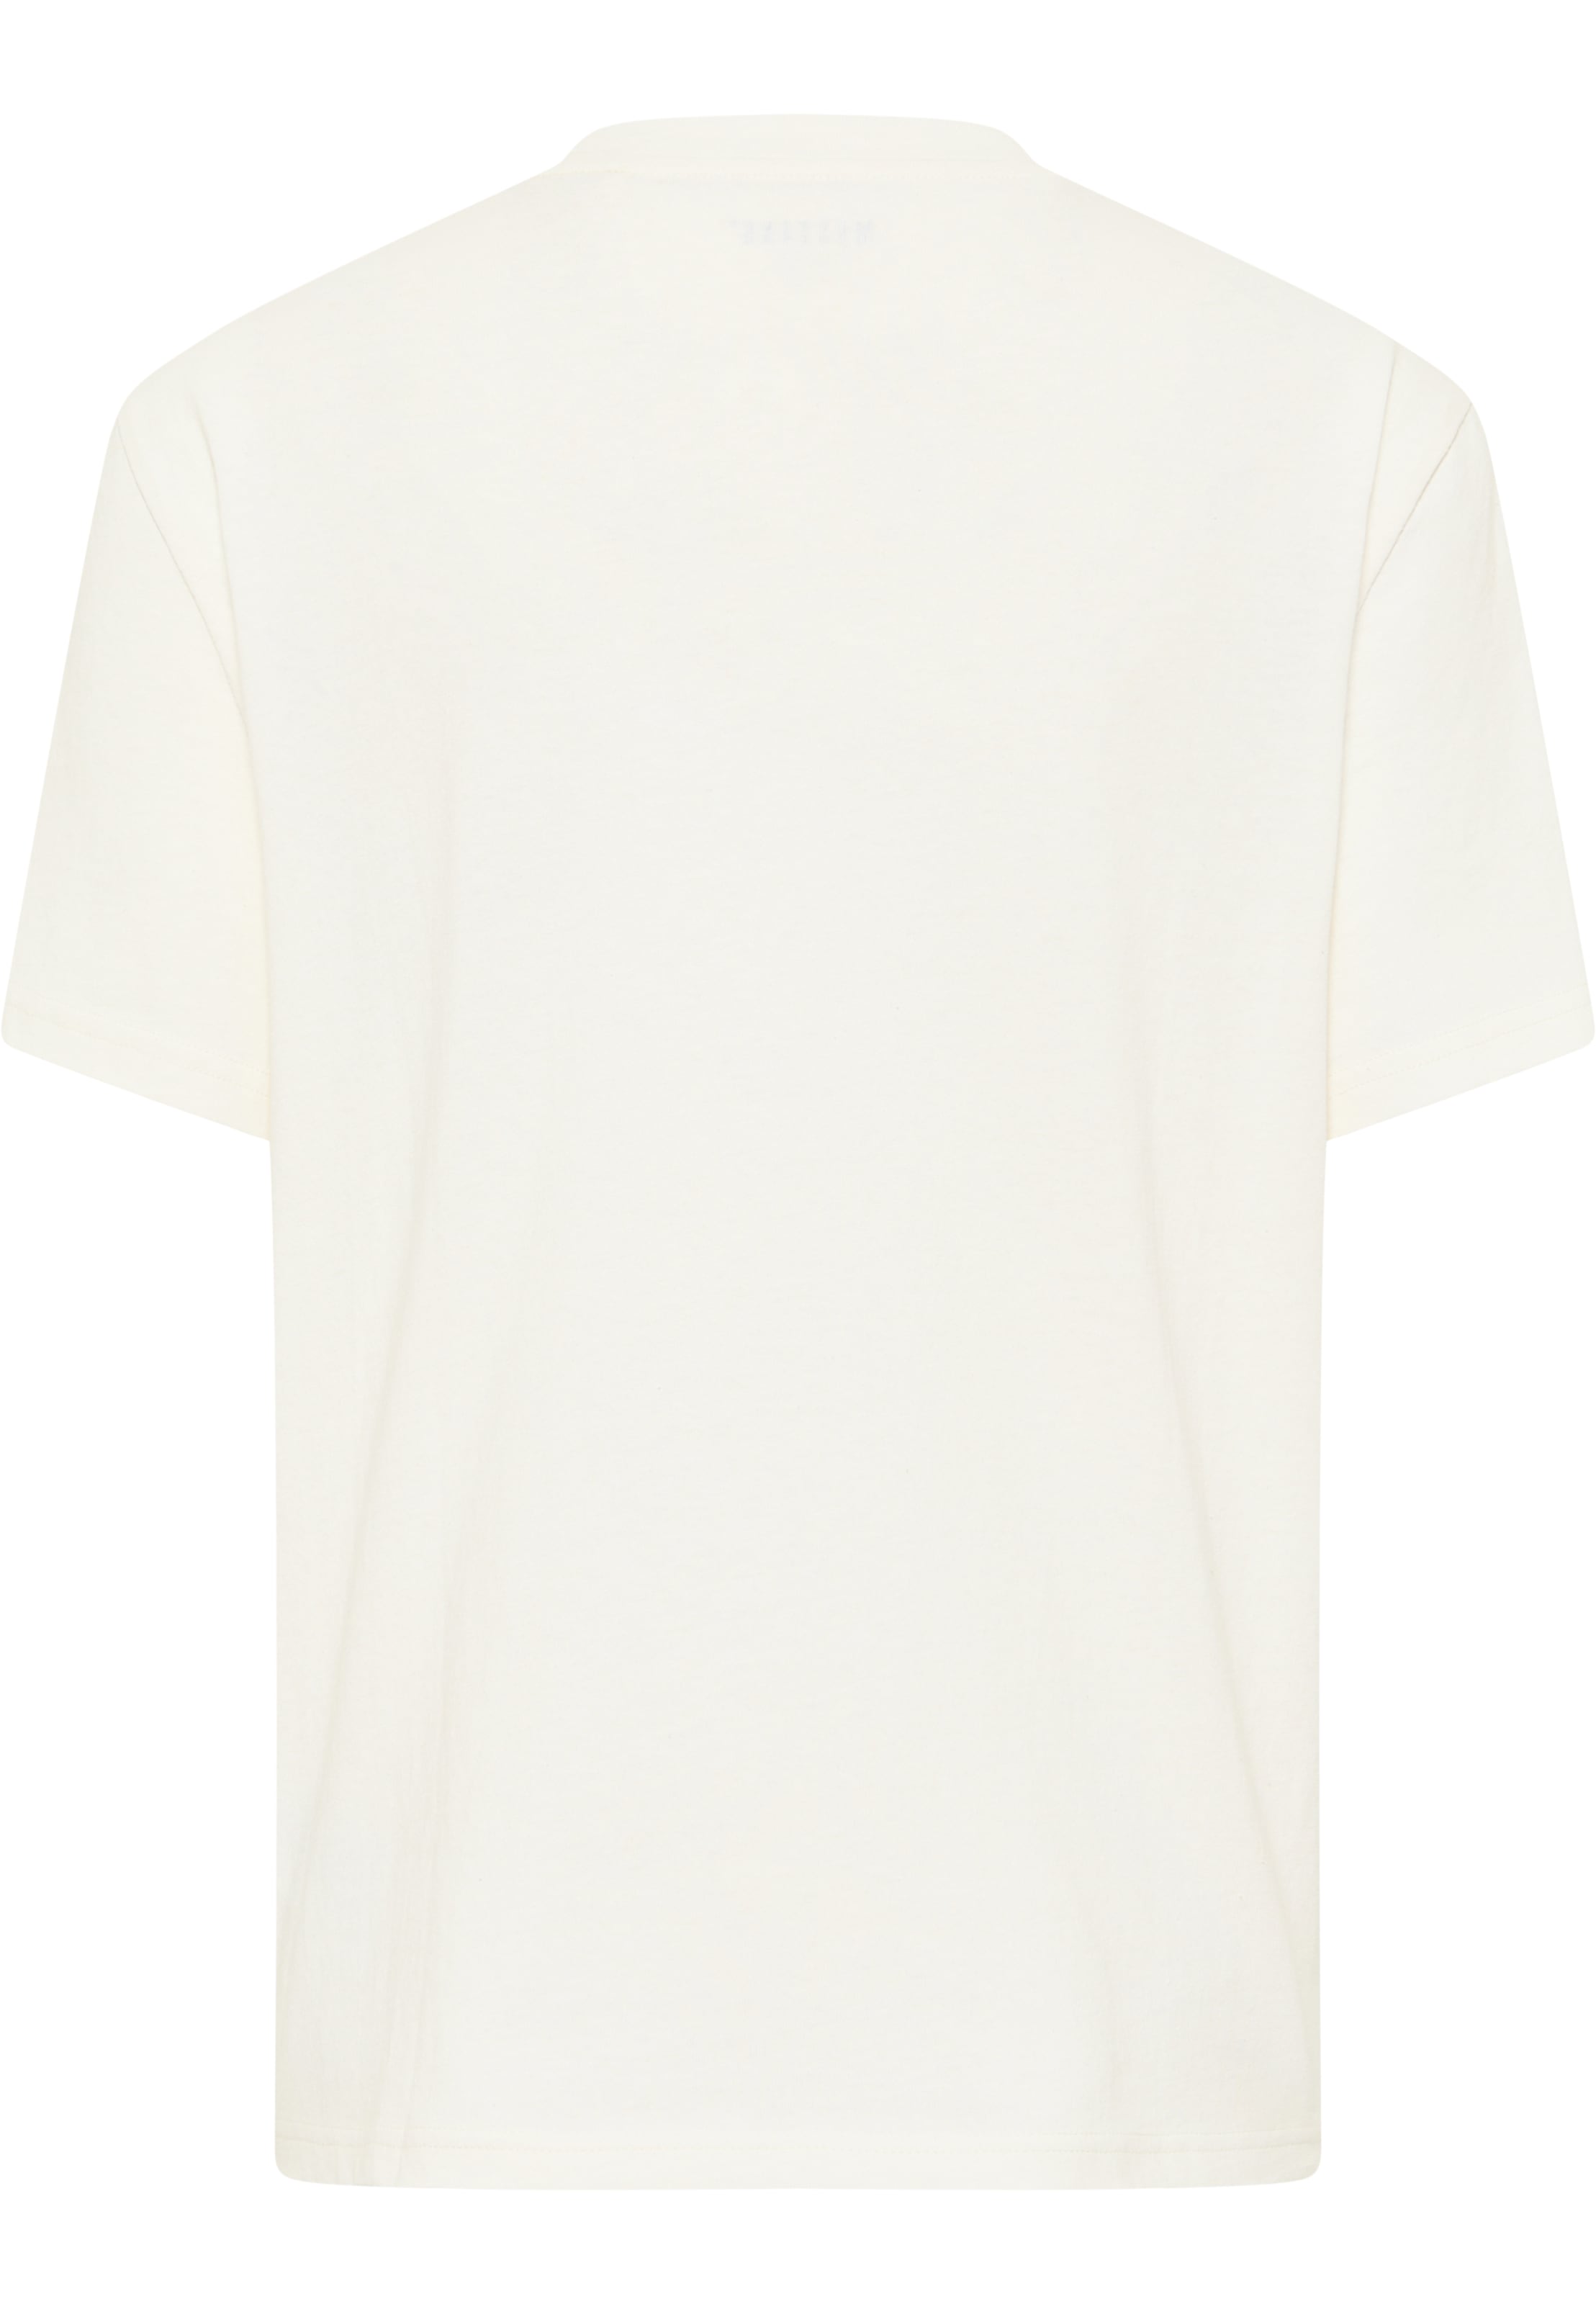 »Style | T-Shirt für C Alina MUSTANG BAUR kaufen Print«